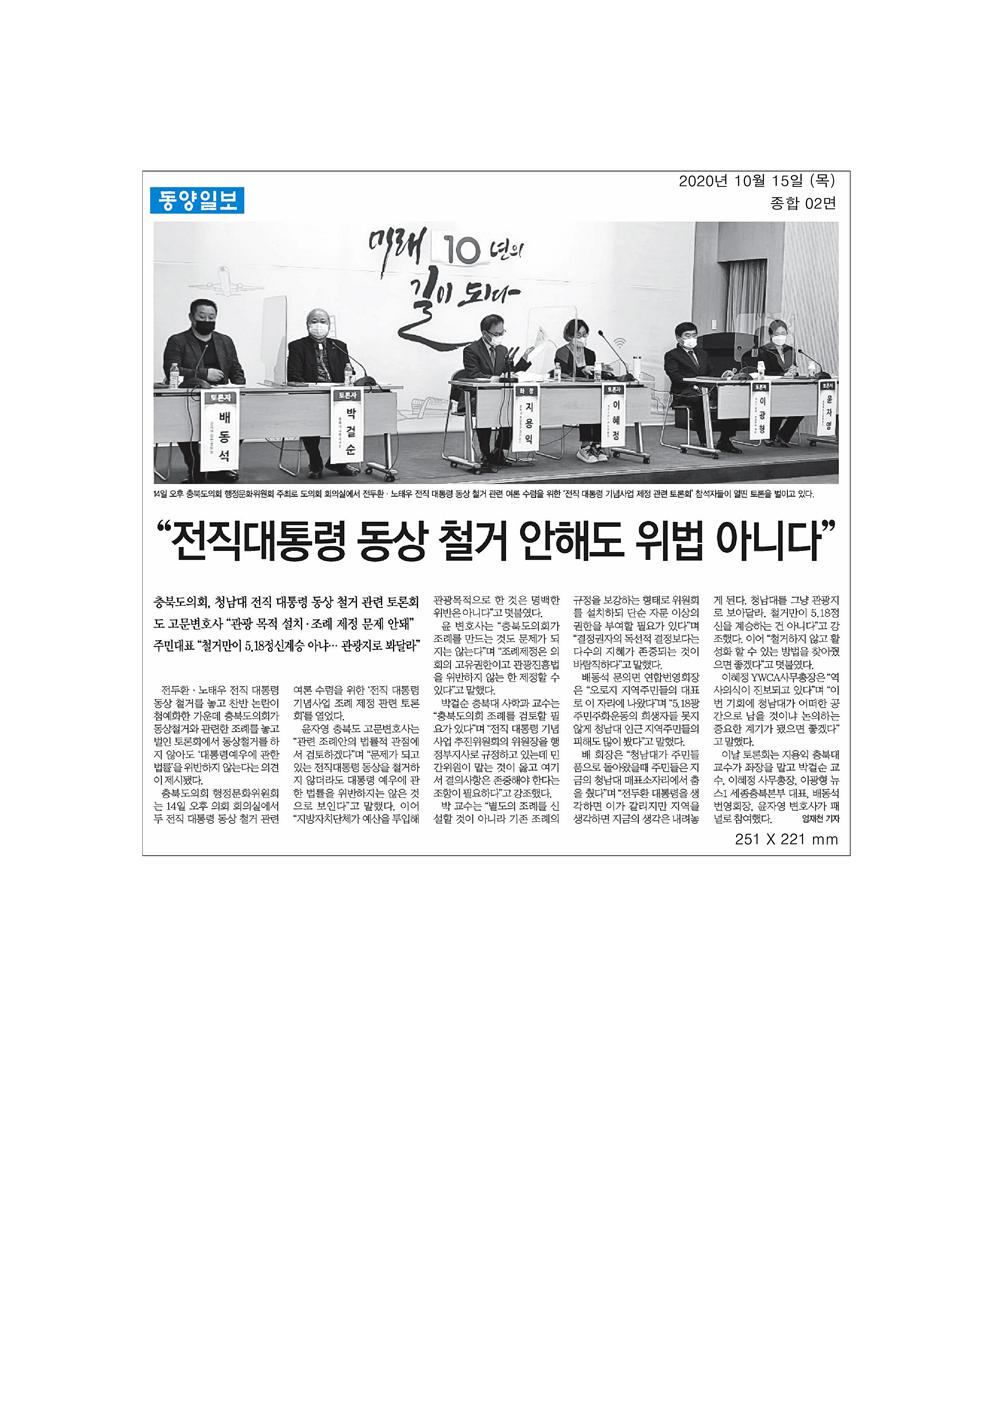 충청북도 전직대통령 기념사업 조례 관련 토론회 신문보도 - 2